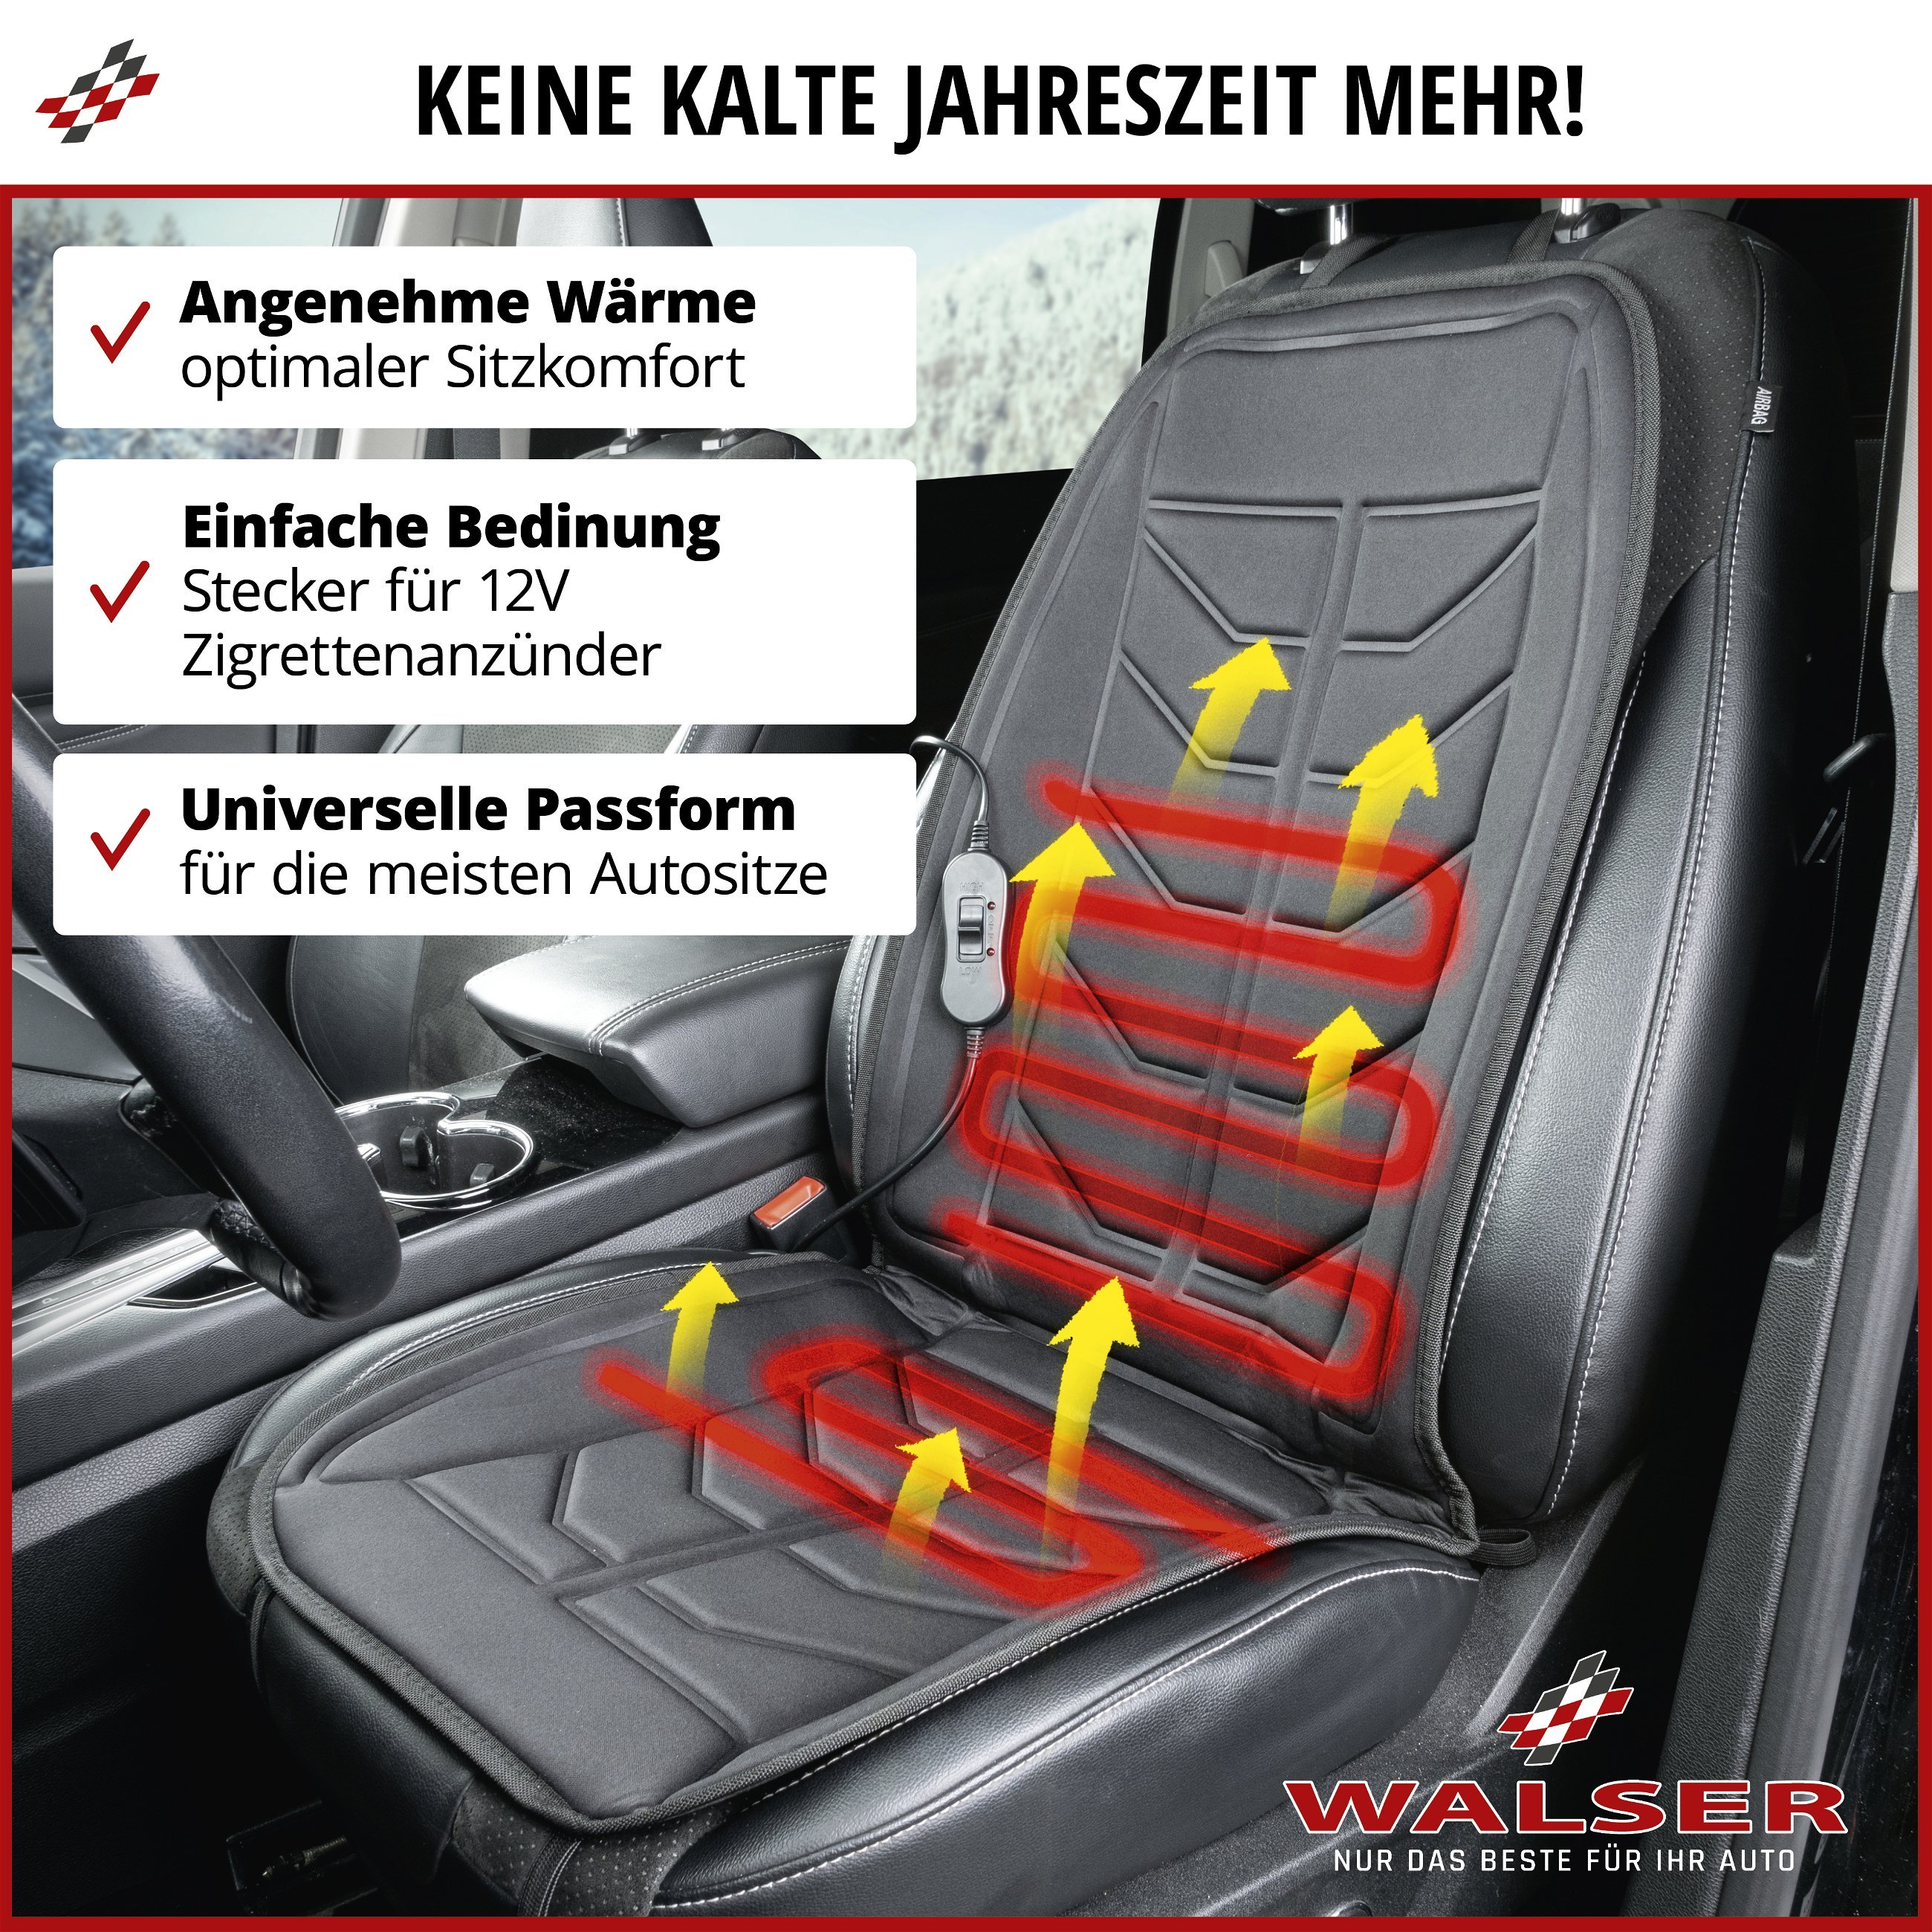 PKW Sitzauflage Calor, Sitzaufleger beheizbar, Autositz Heizkissen mit 12-Volt-Stecker